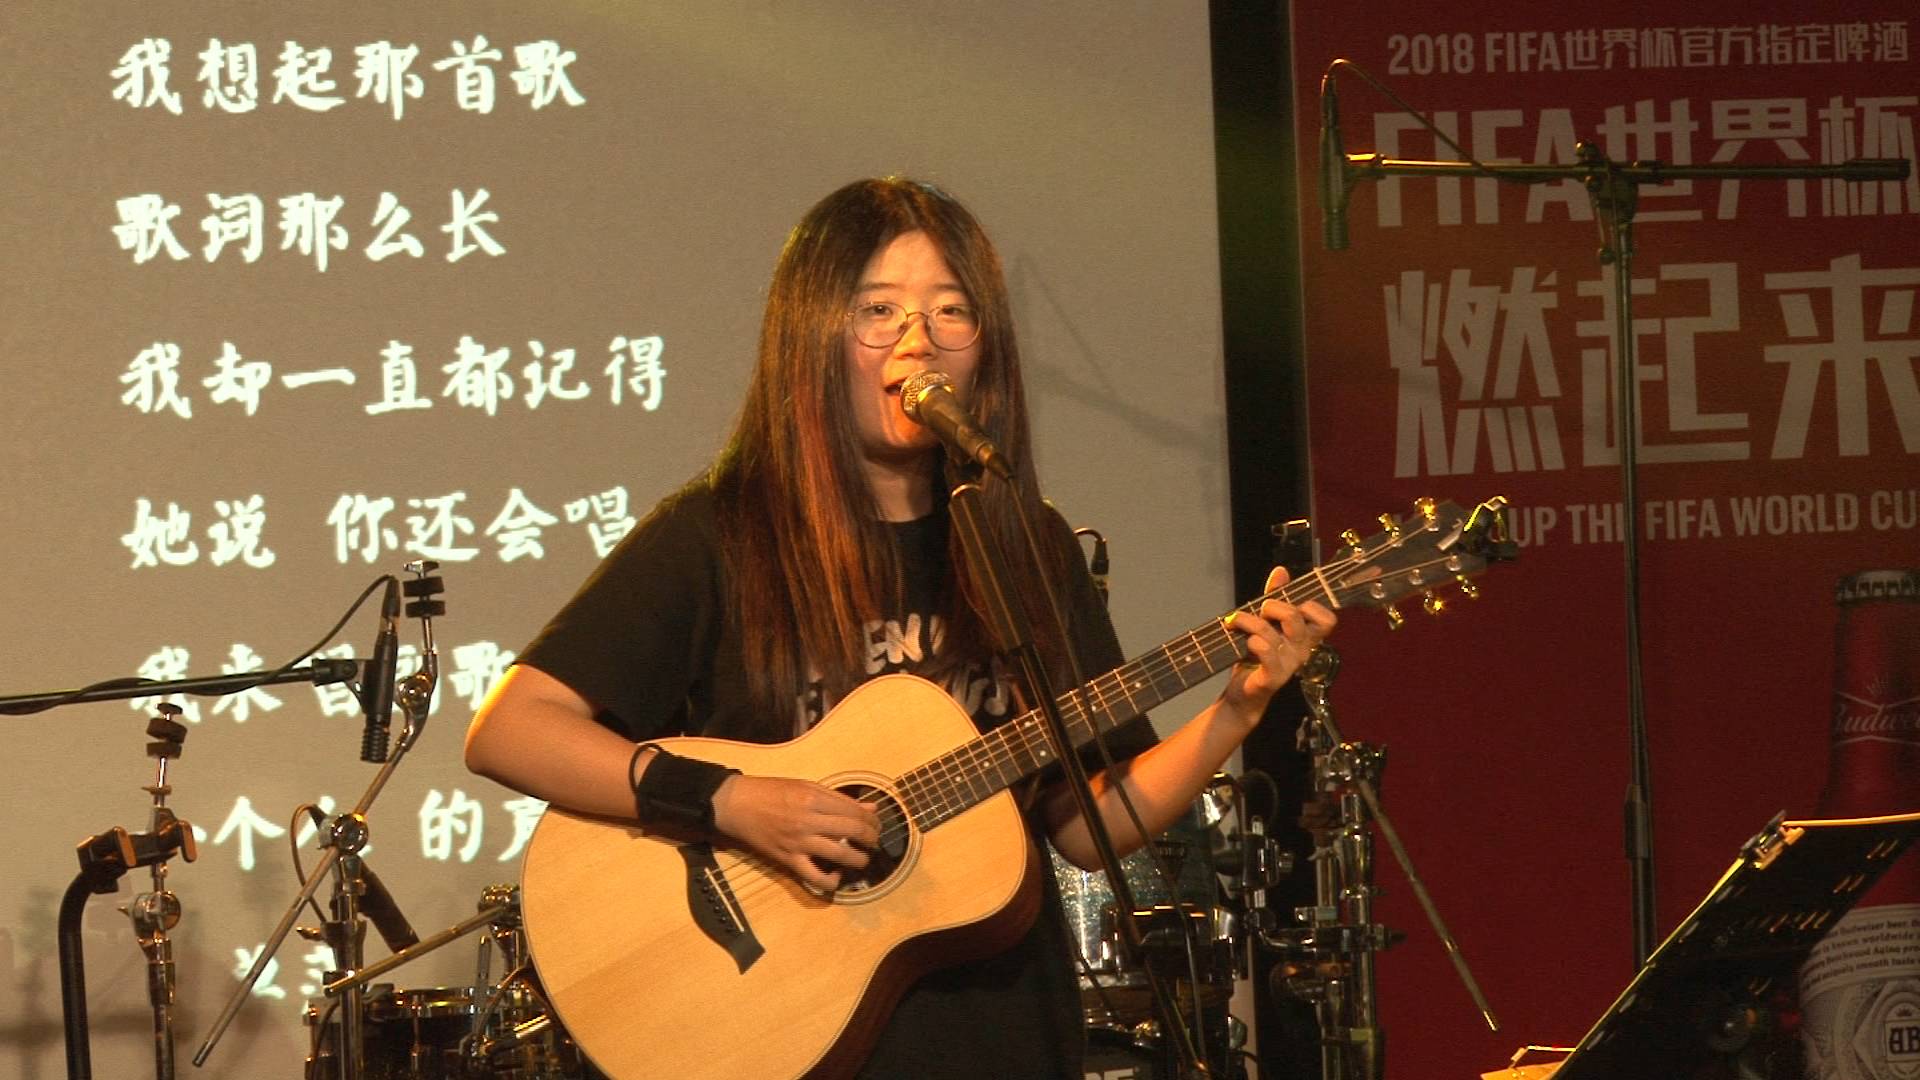 61秒丨陈小熊《五城记》巡演首站在济南举行 献唱《济南济南》